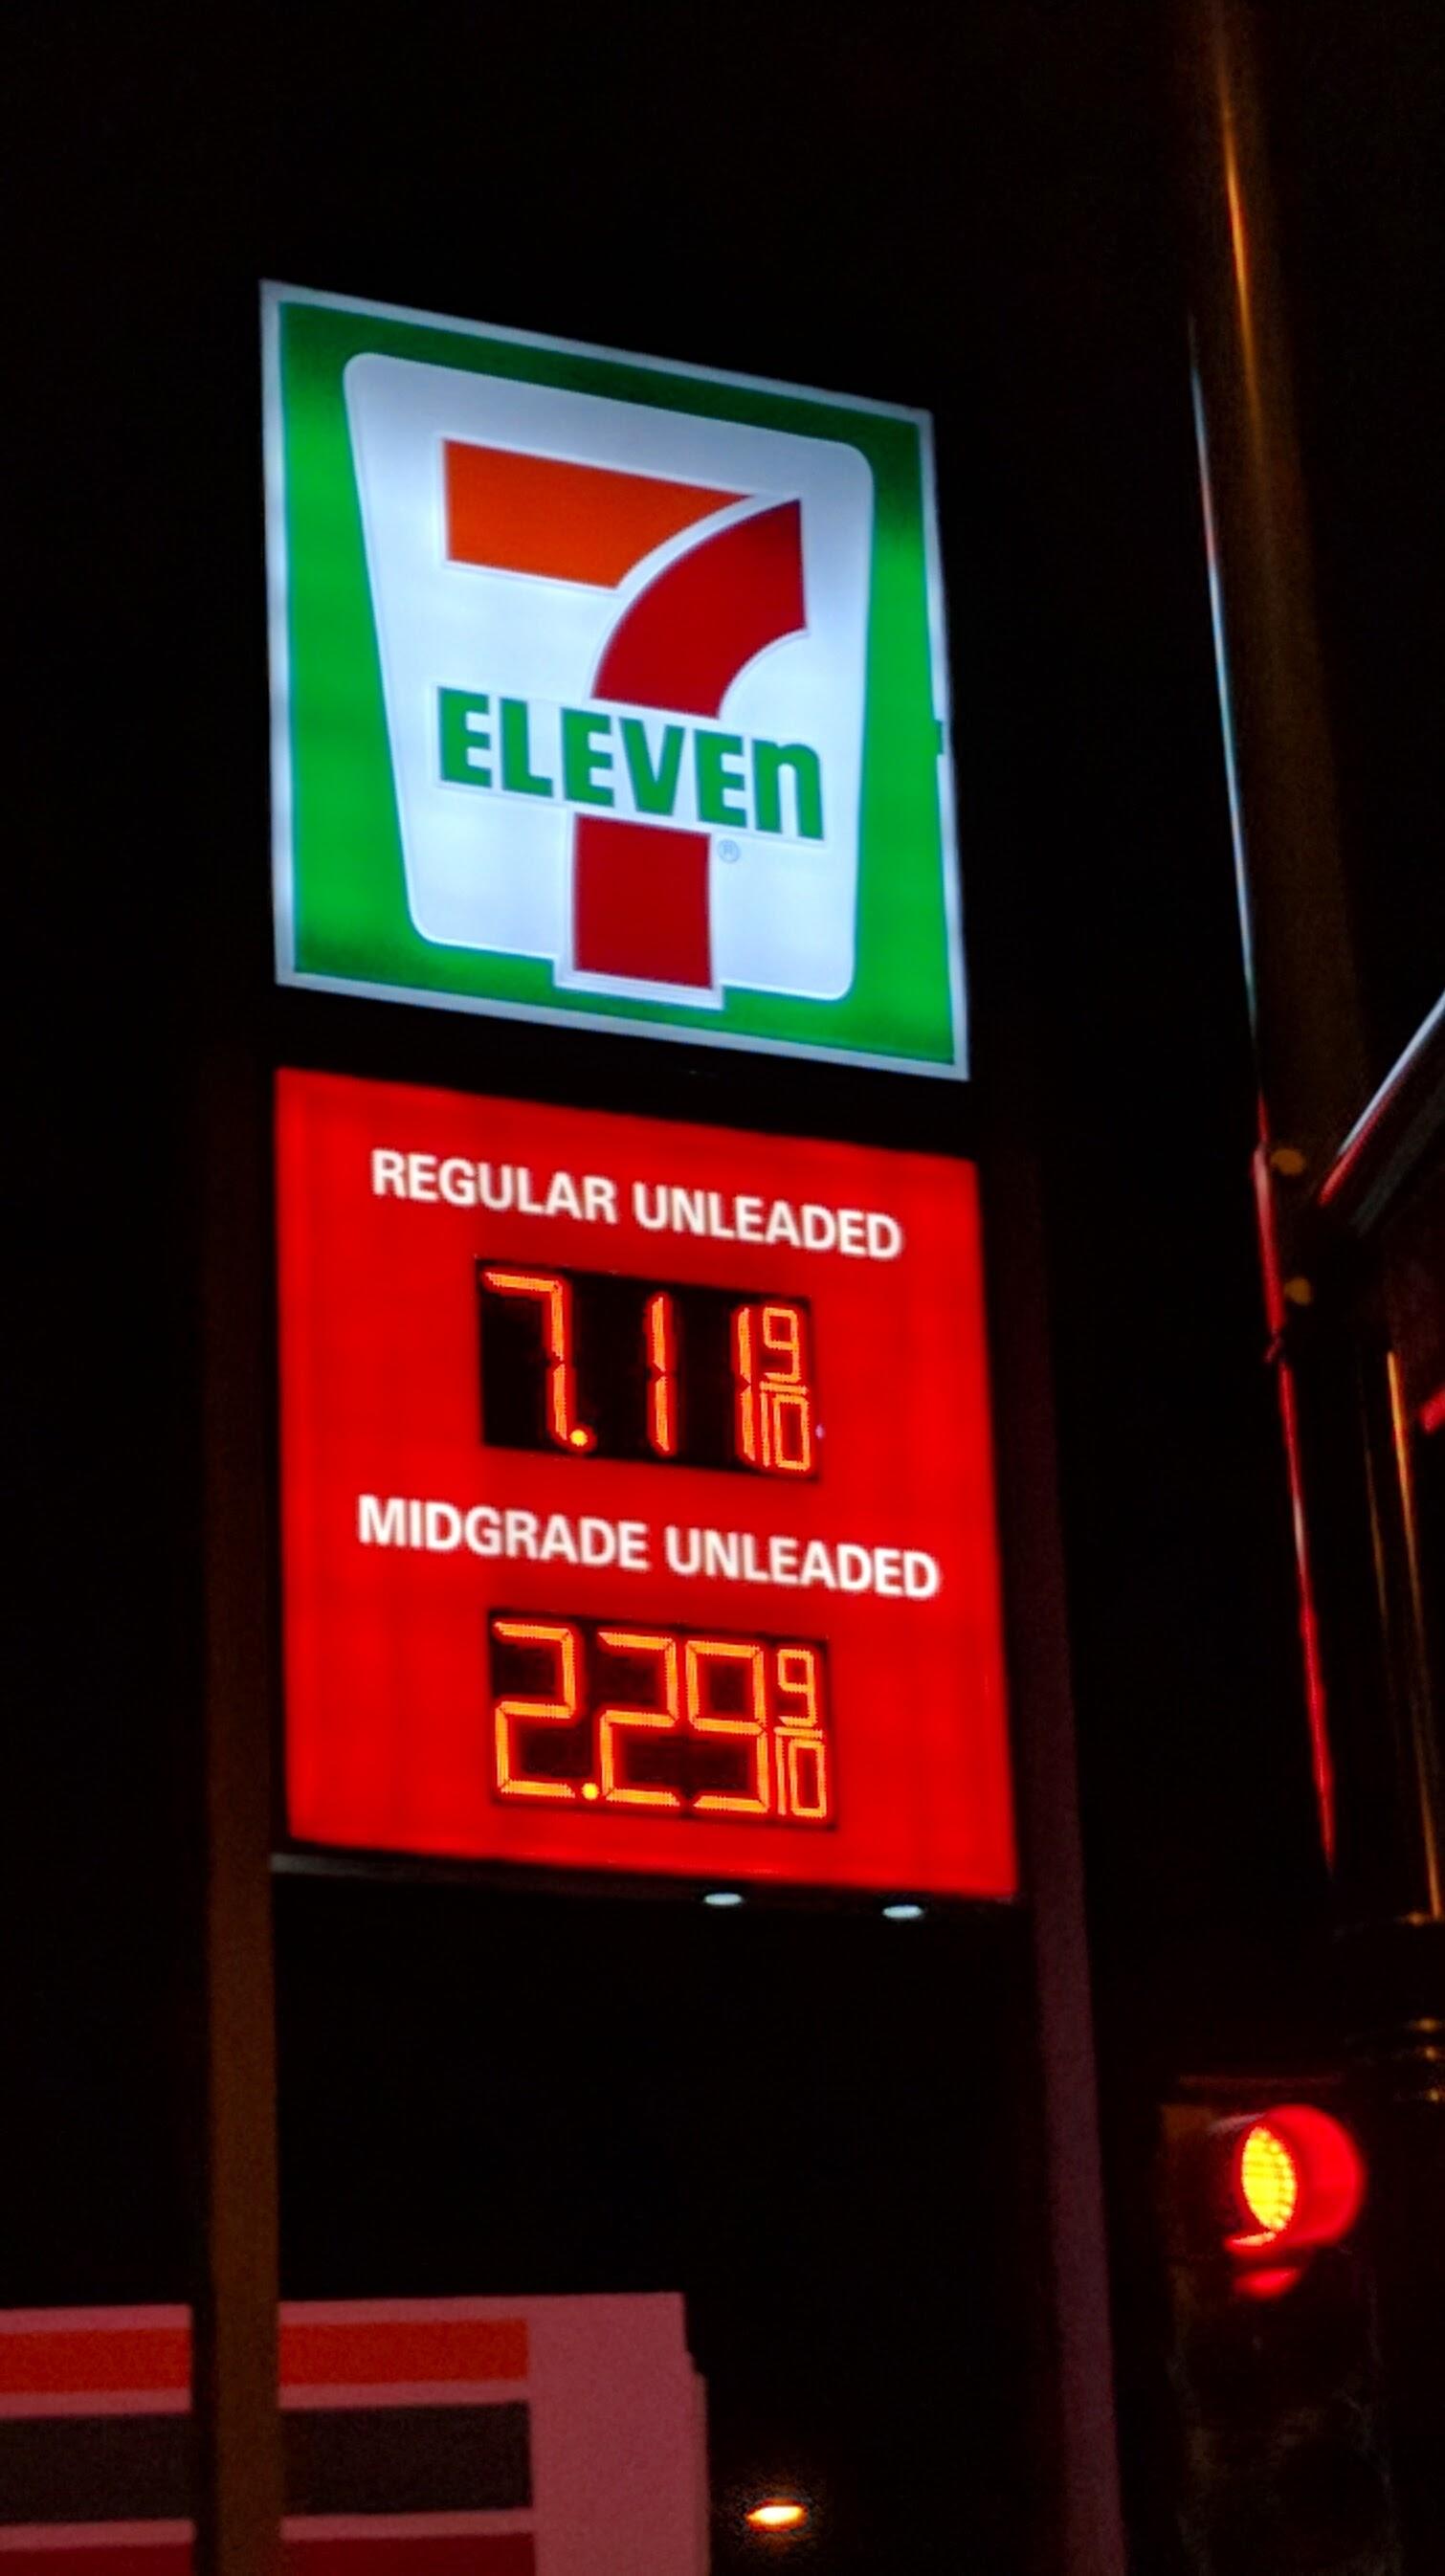 7 eleven gas price